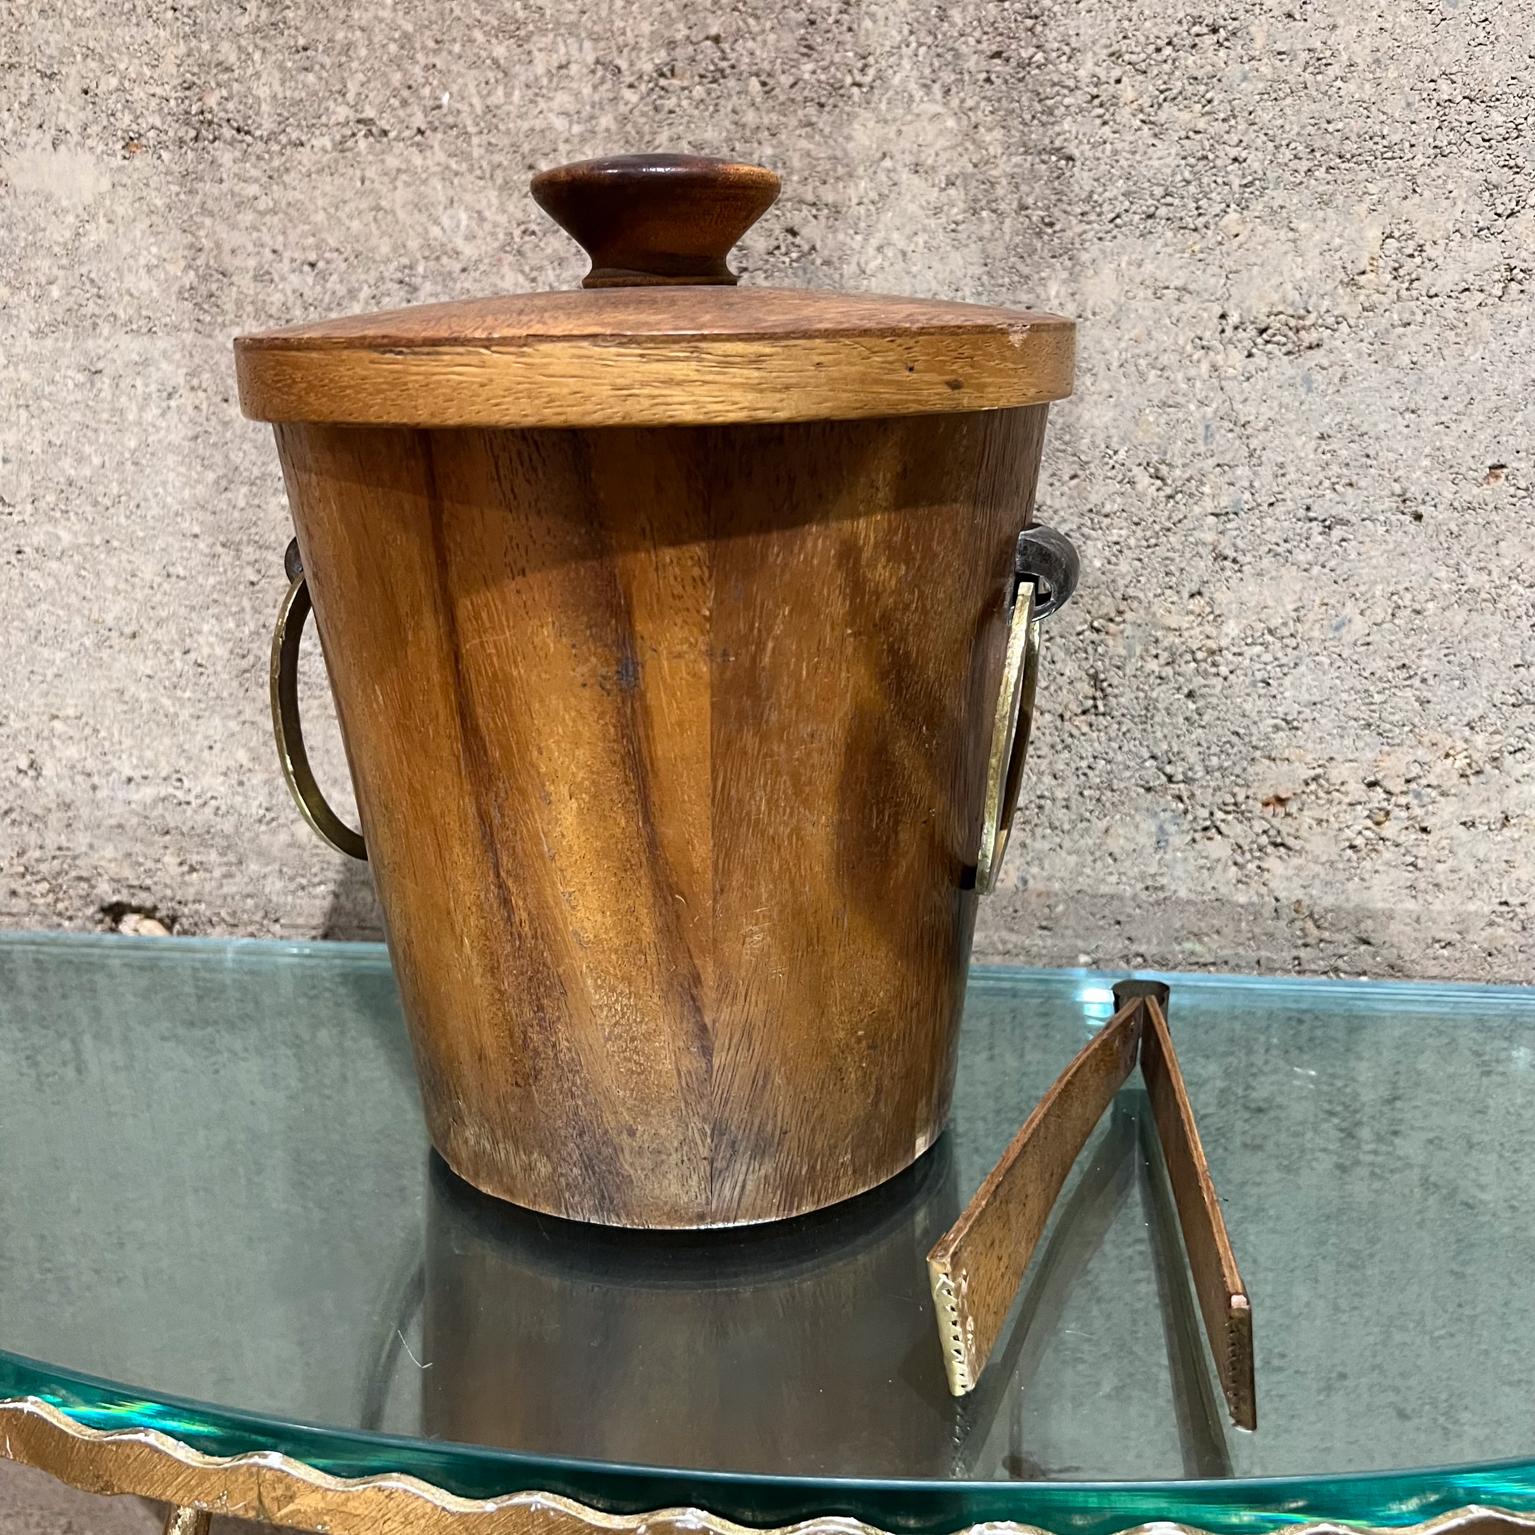 1960s Vintage Teak Wood Brass Ice Bucket Modernist Design Mexico
9,5 h x 7,5 diamètre
pince 6,63 long x 1,13 p x 2,25 w
Condition vintage originale d'occasion, l'usure est présente.
Le revêtement en aluminium est usé.
Voir toutes les images pour